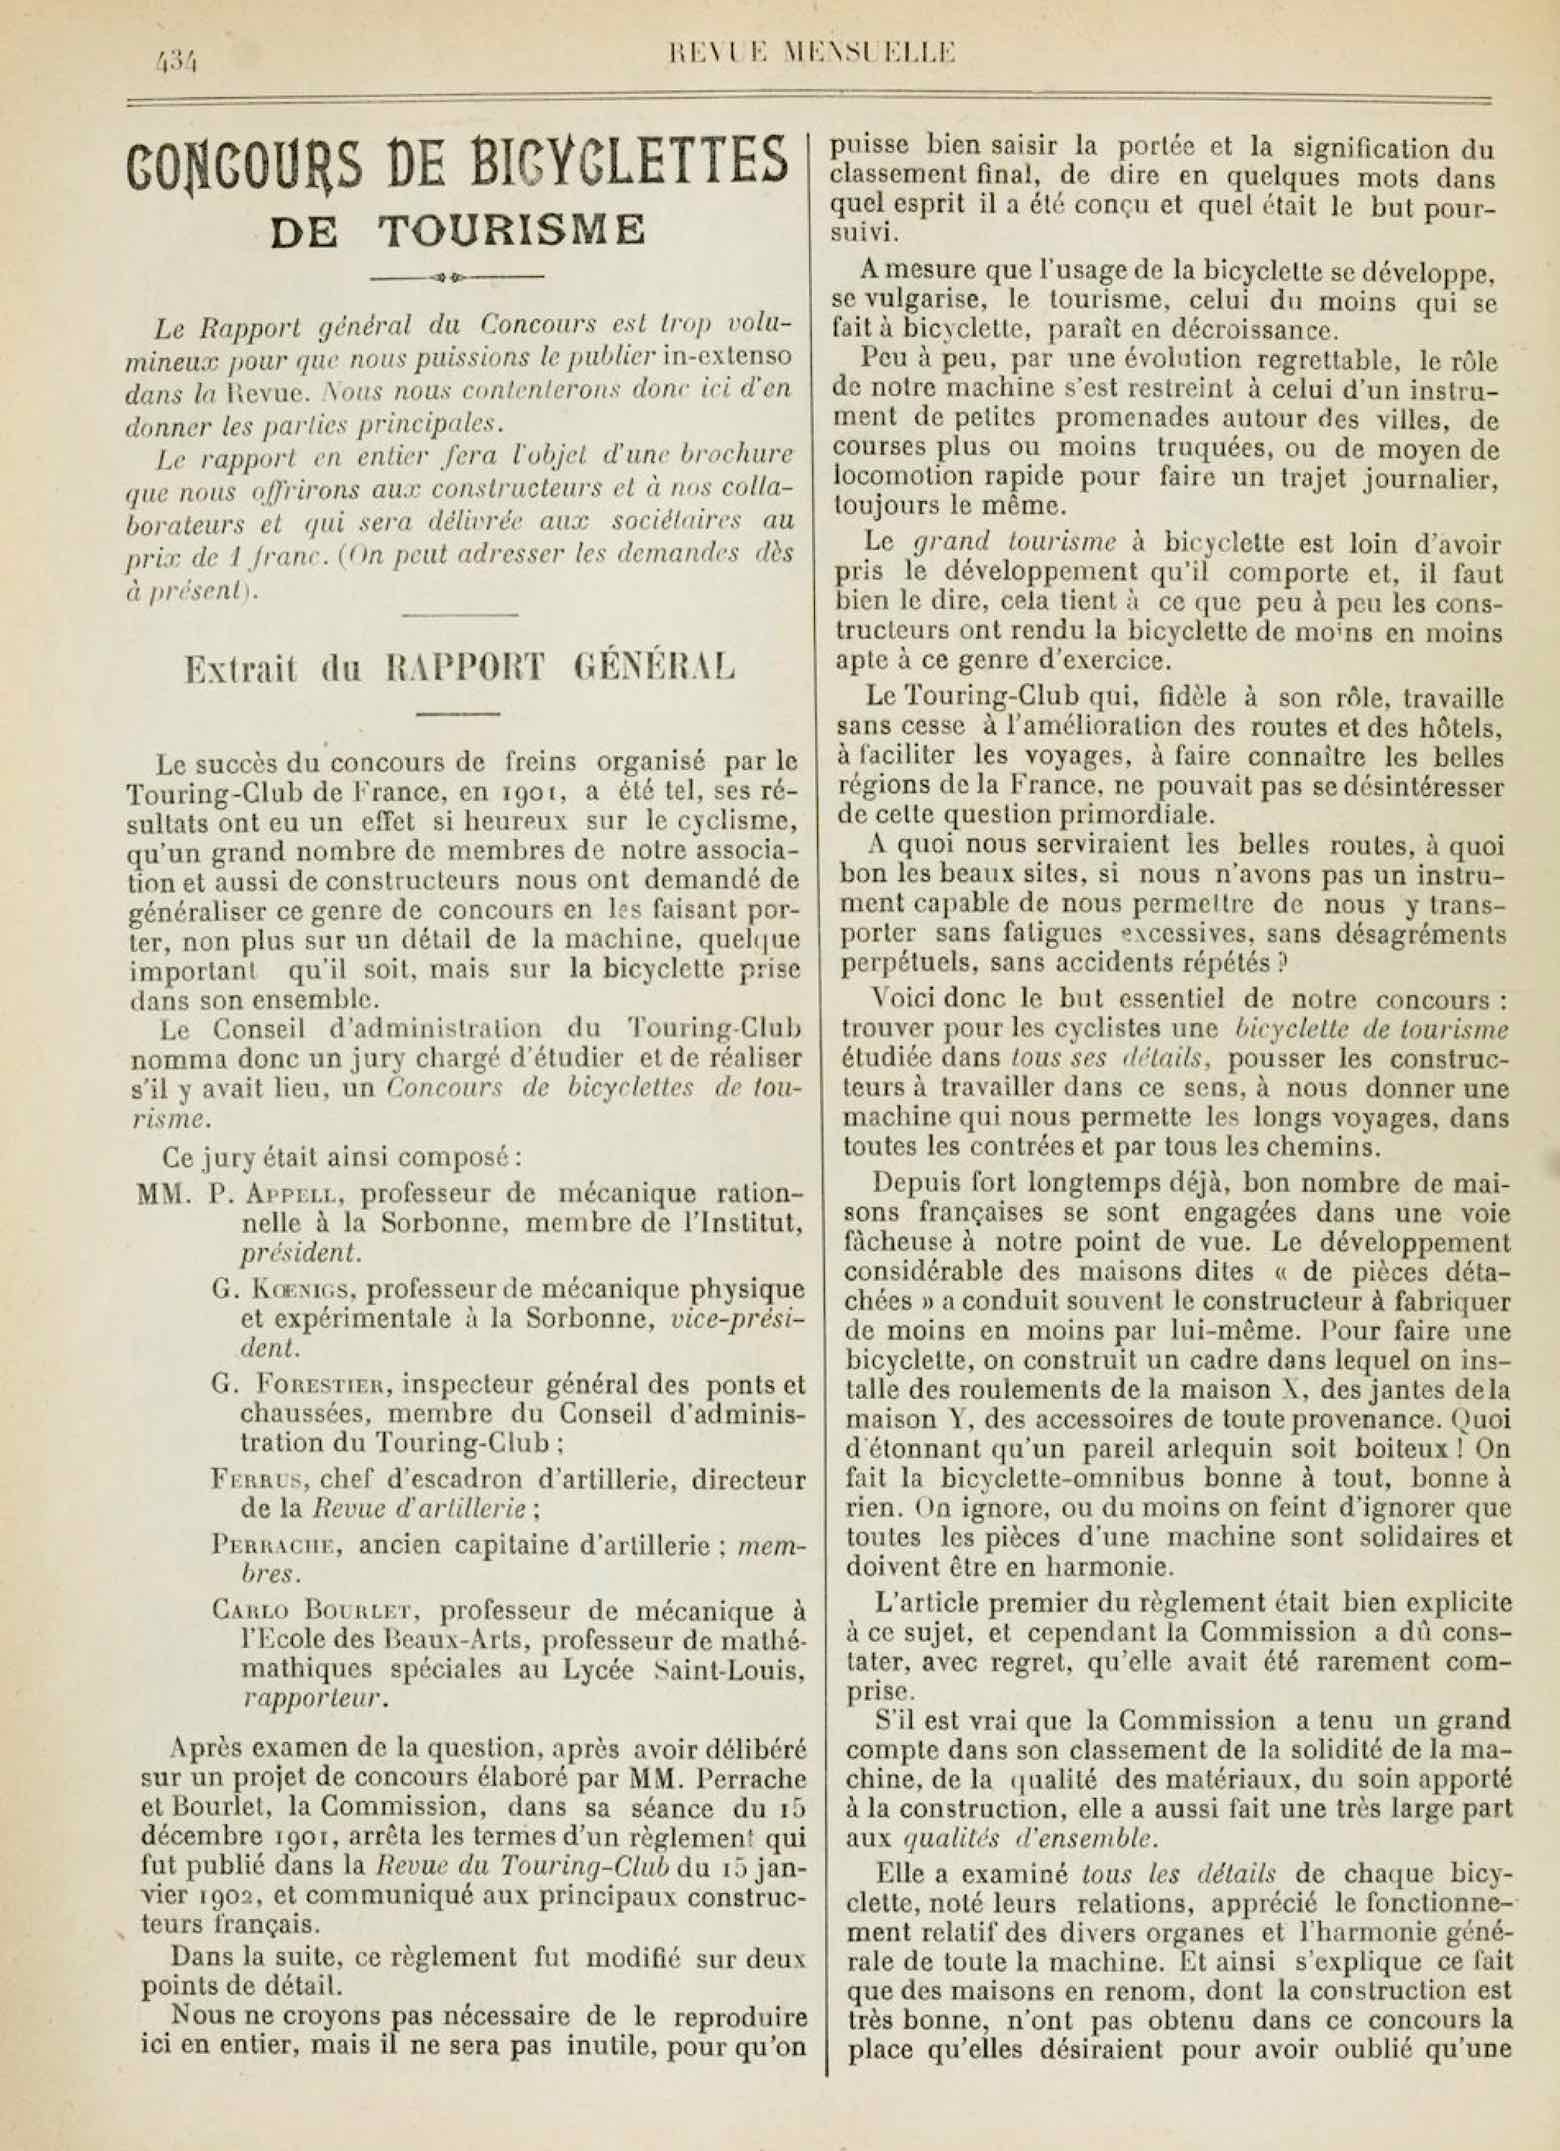 T.C.F. Revue Mensuelle October 1902 - Concours de Bicyclettes de Tourisme (part IV) scan 1 main image